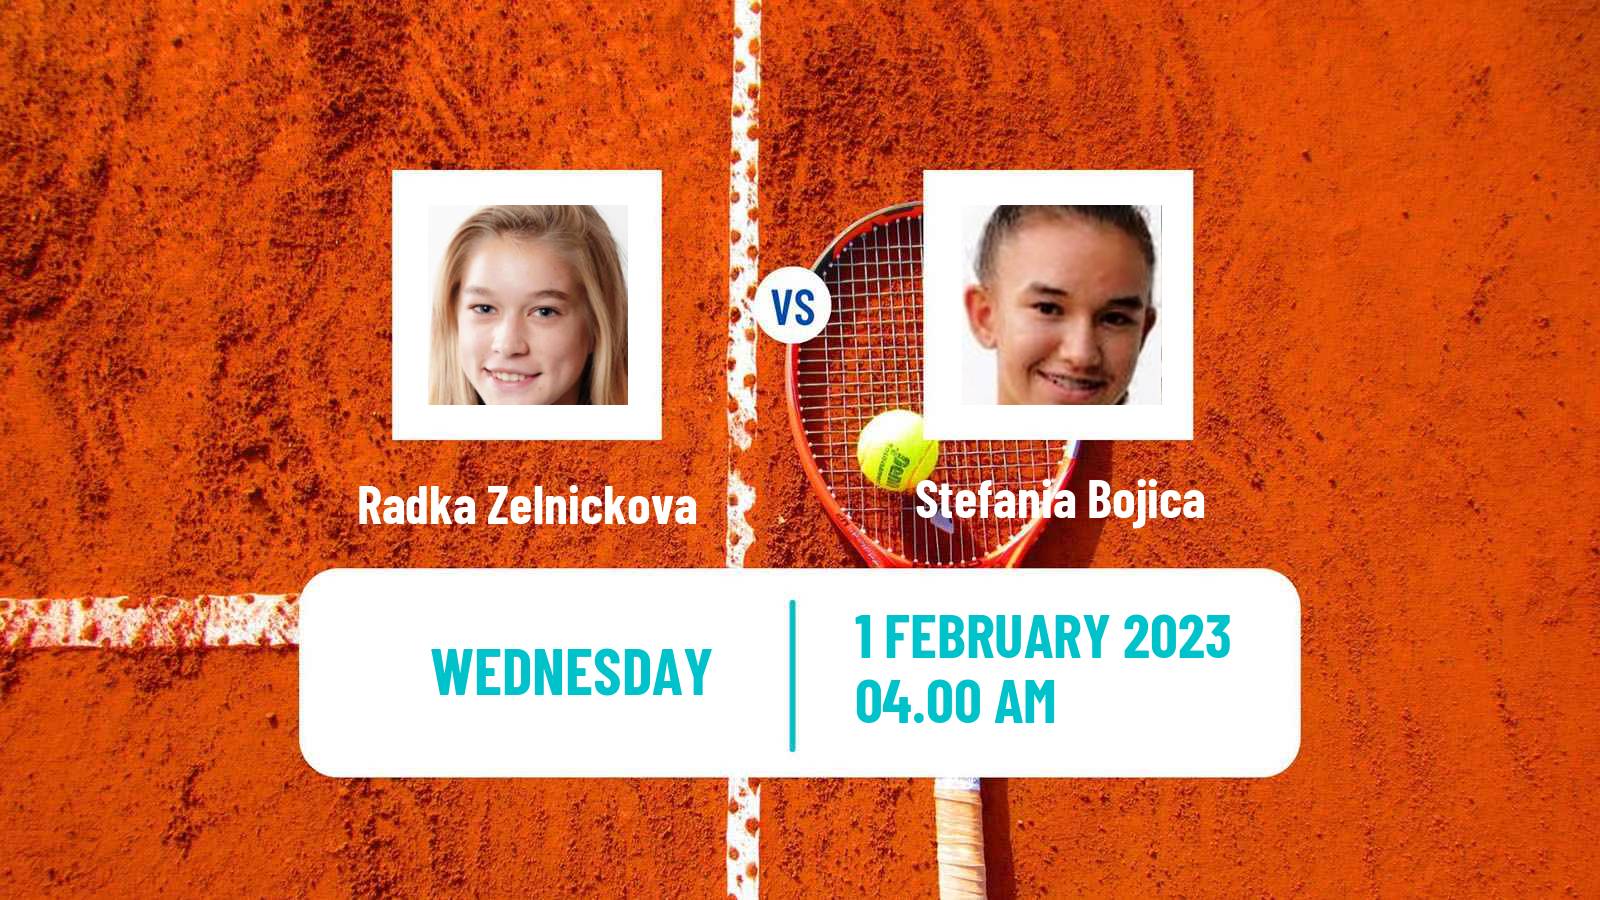 Tennis ITF Tournaments Radka Zelnickova - Stefania Bojica